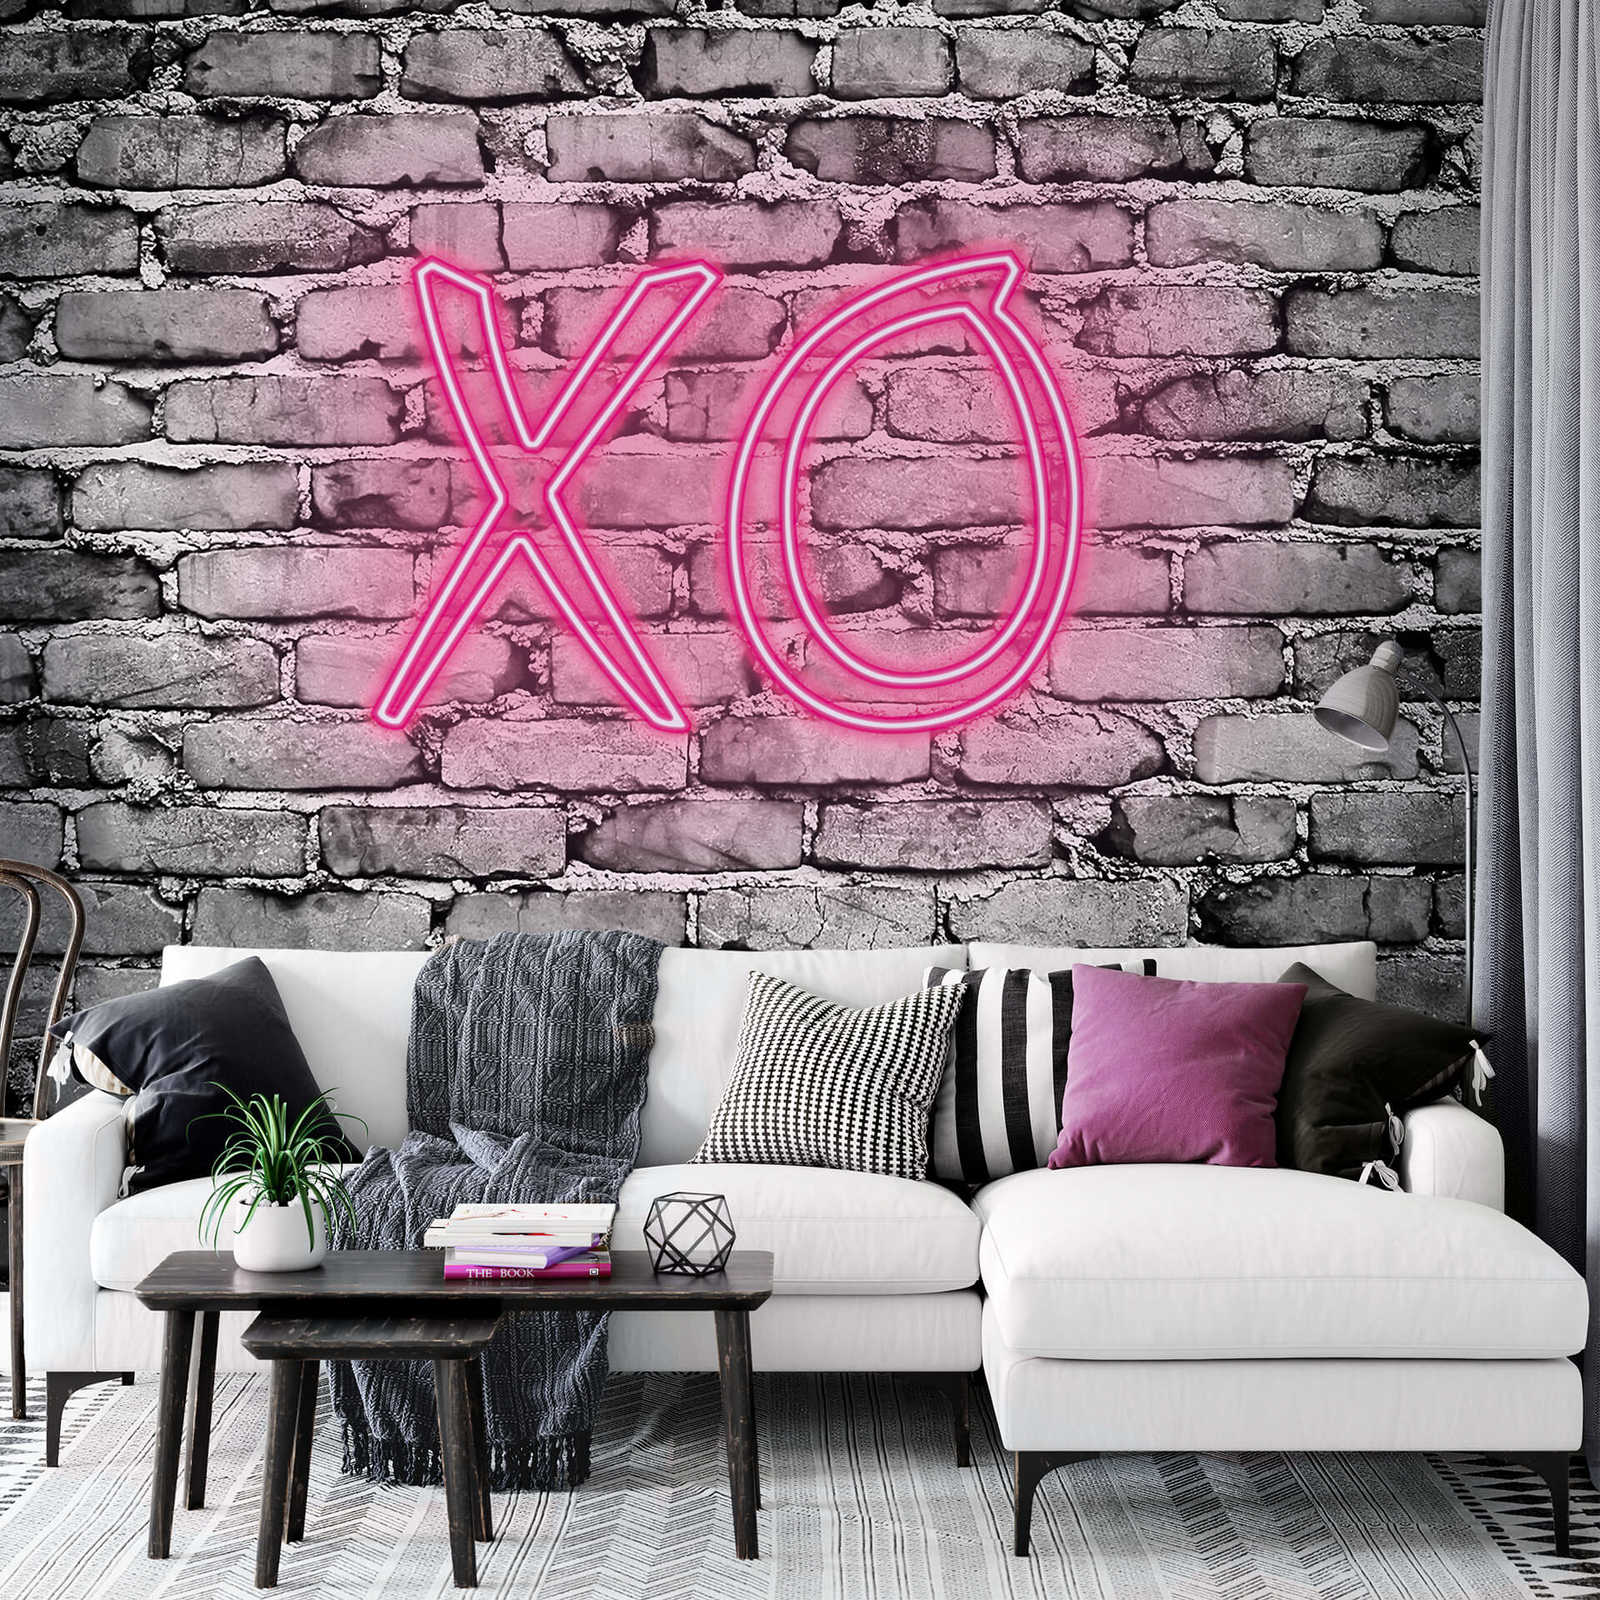             smal fotobehang verlichte letters XO op stenen muur
        